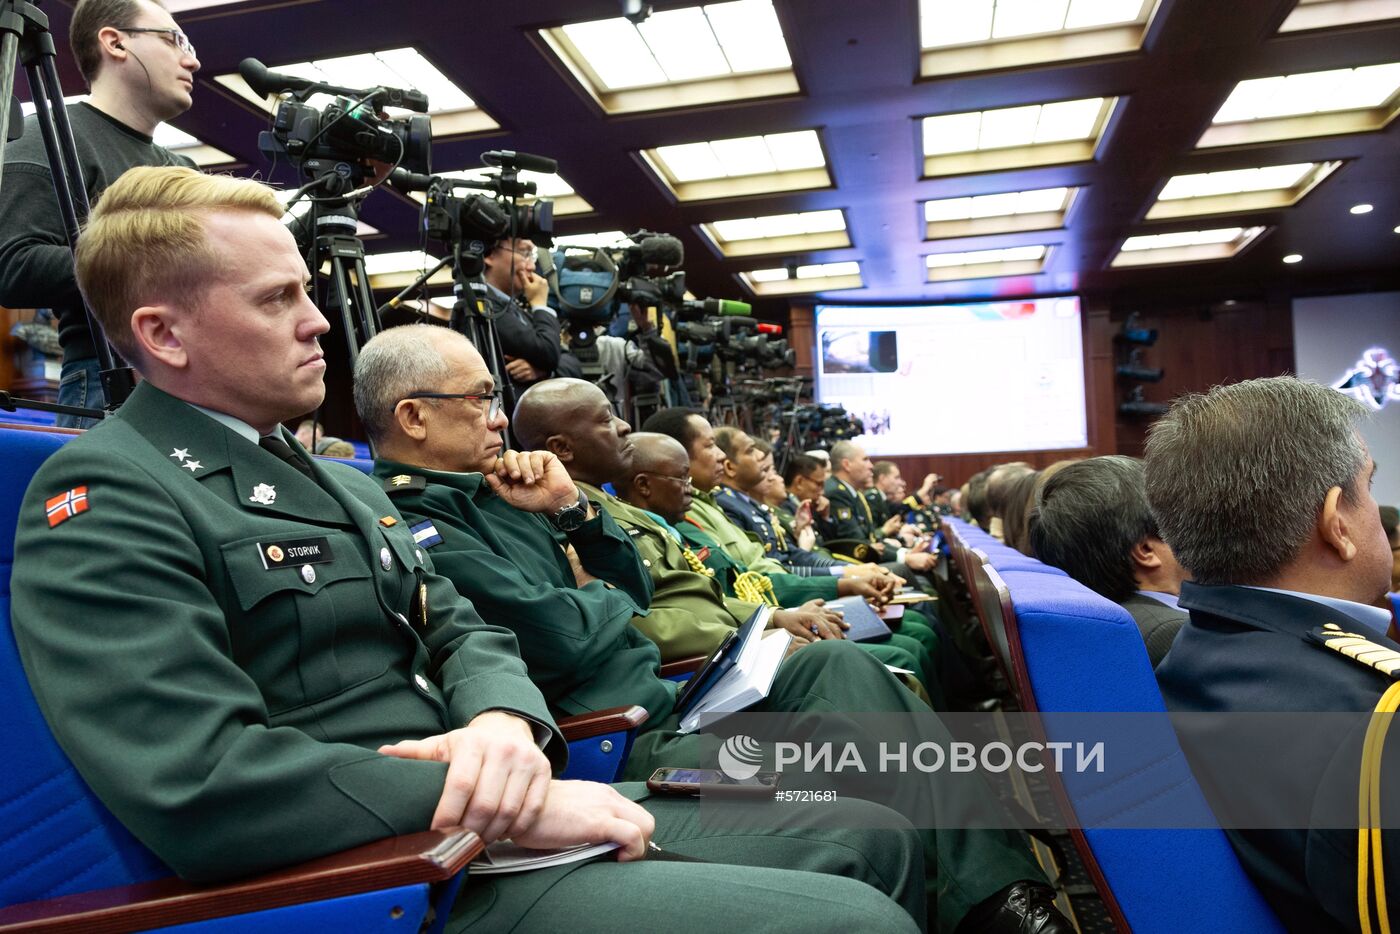 Брифинг начальника Генерального штаба Вооруженных сил РФ В. Герасимова